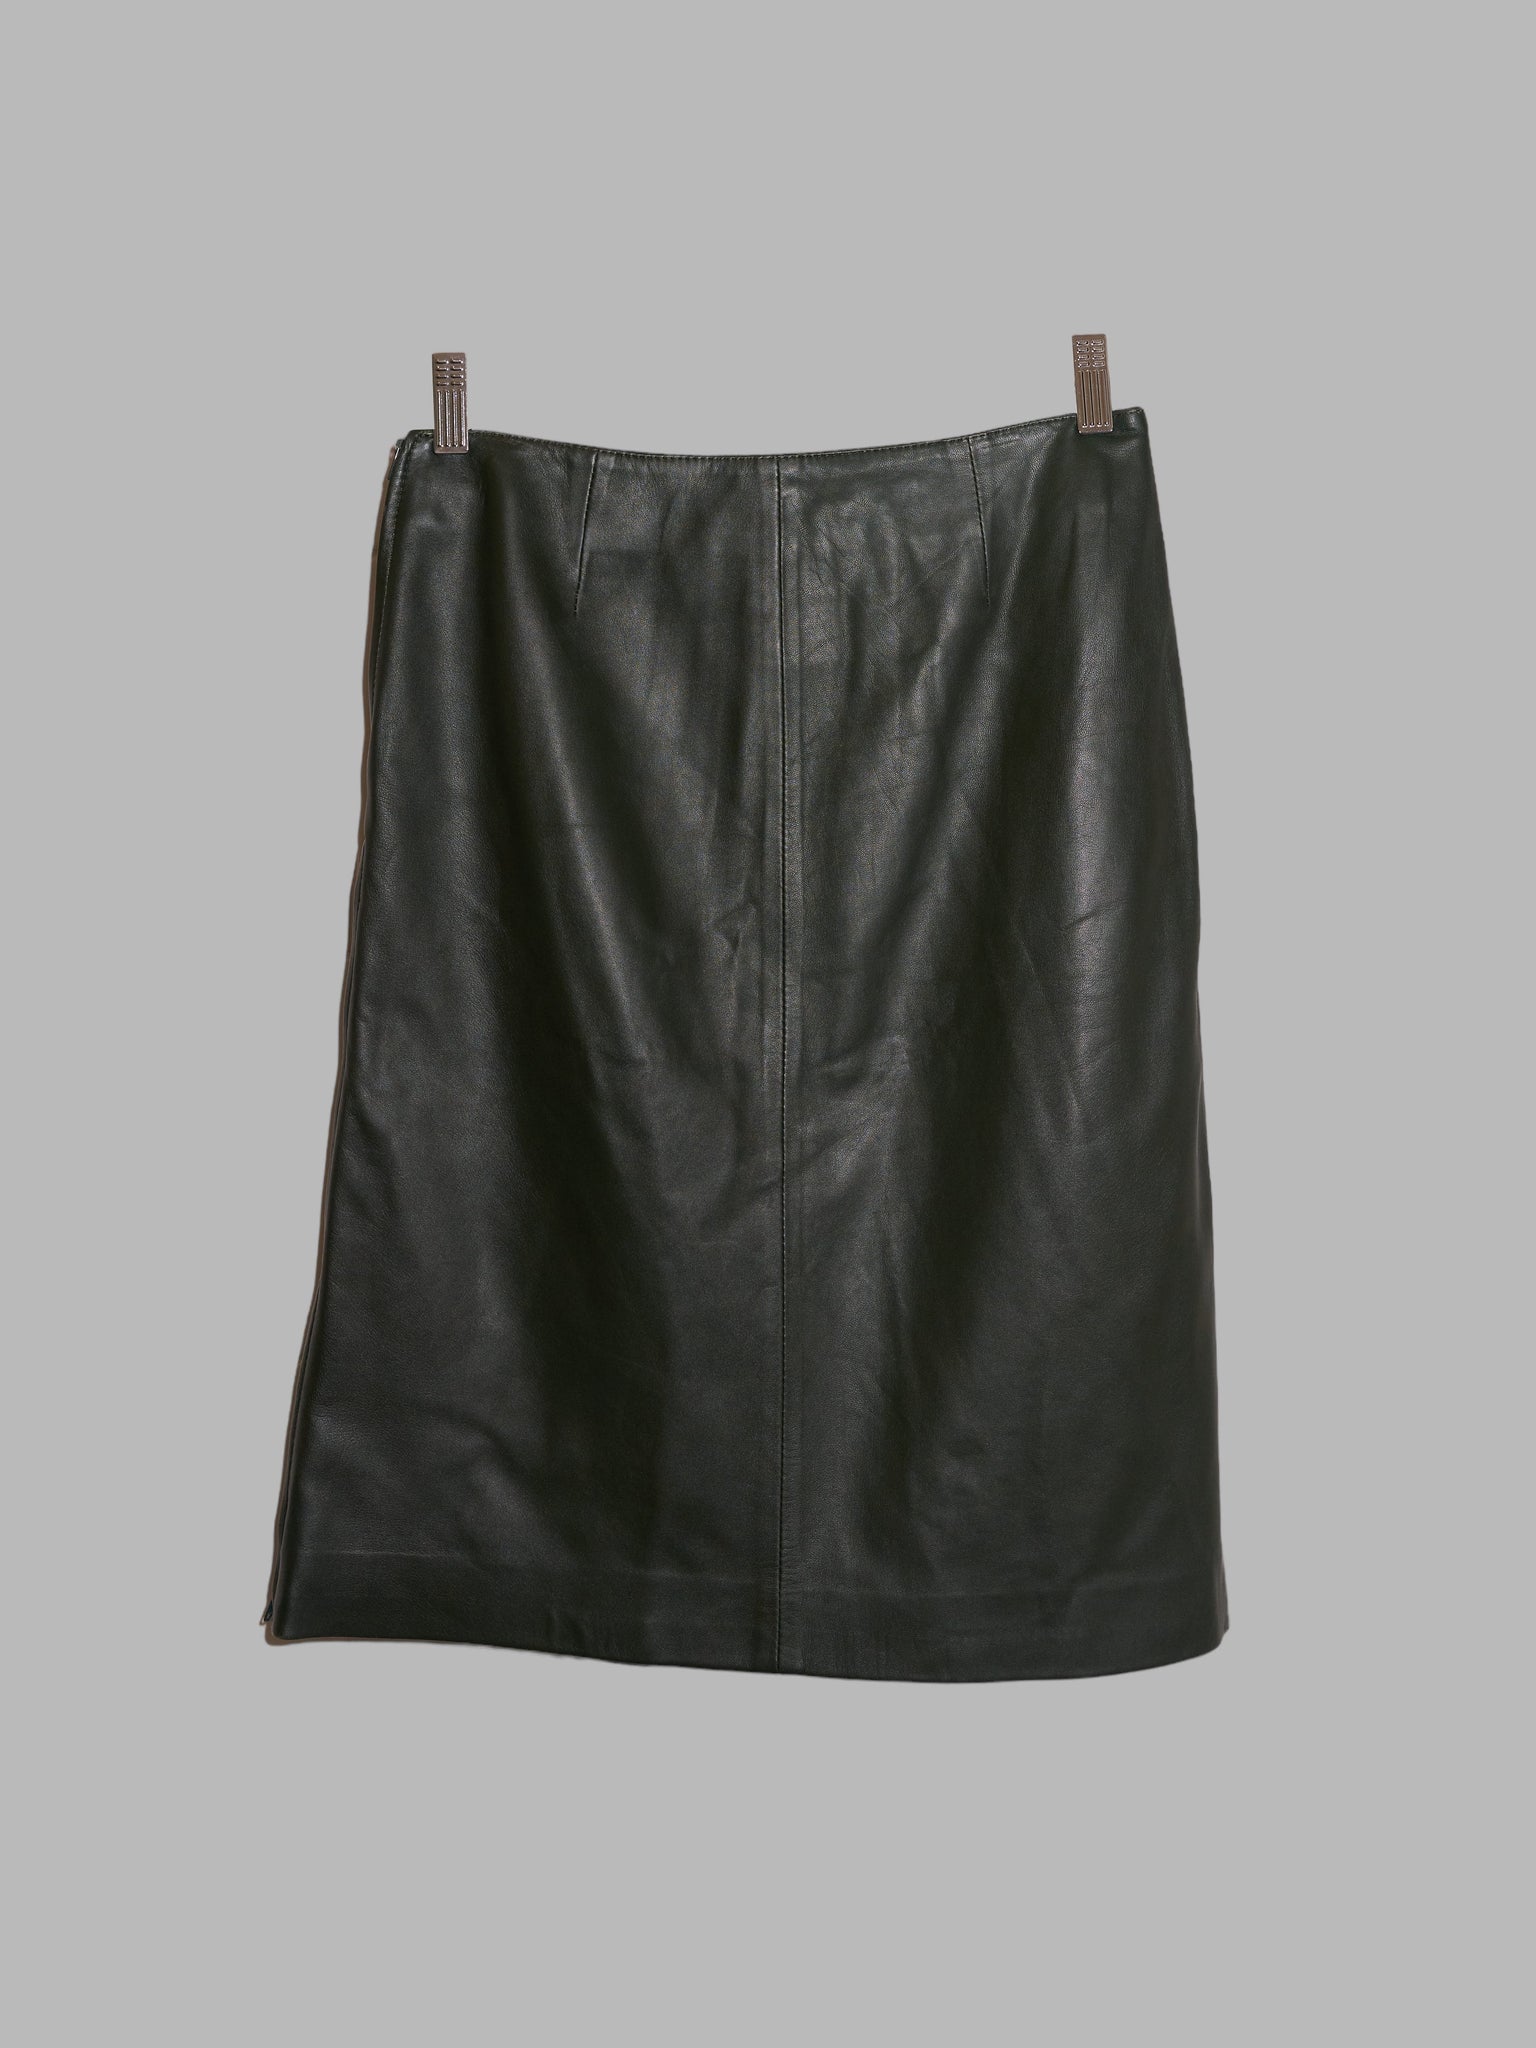 Gianfranco Ferre Studio dark green leather side zip skirt - IT size 28